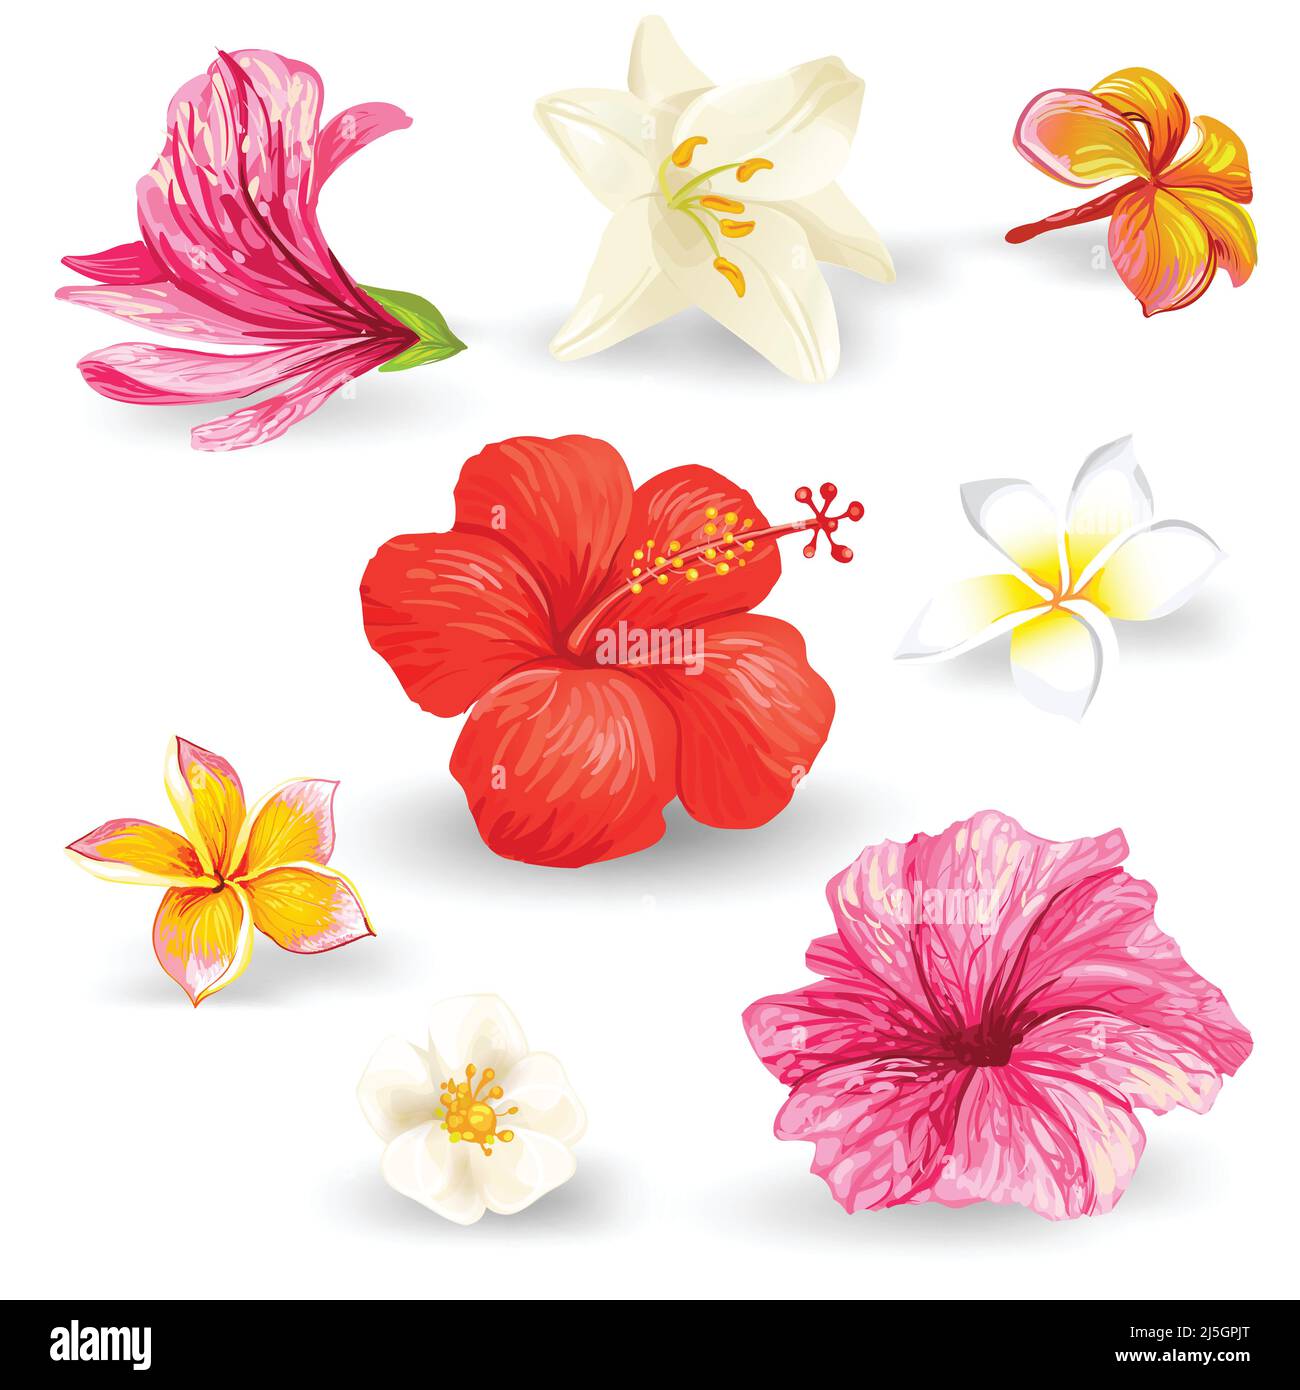 Set di illustrazioni vettoriali di fiori tropicali di ibisco con petali rosa, rosso, giallo e bianco isolati su sfondo bianco in uno stile realistico. Illustrazione Vettoriale